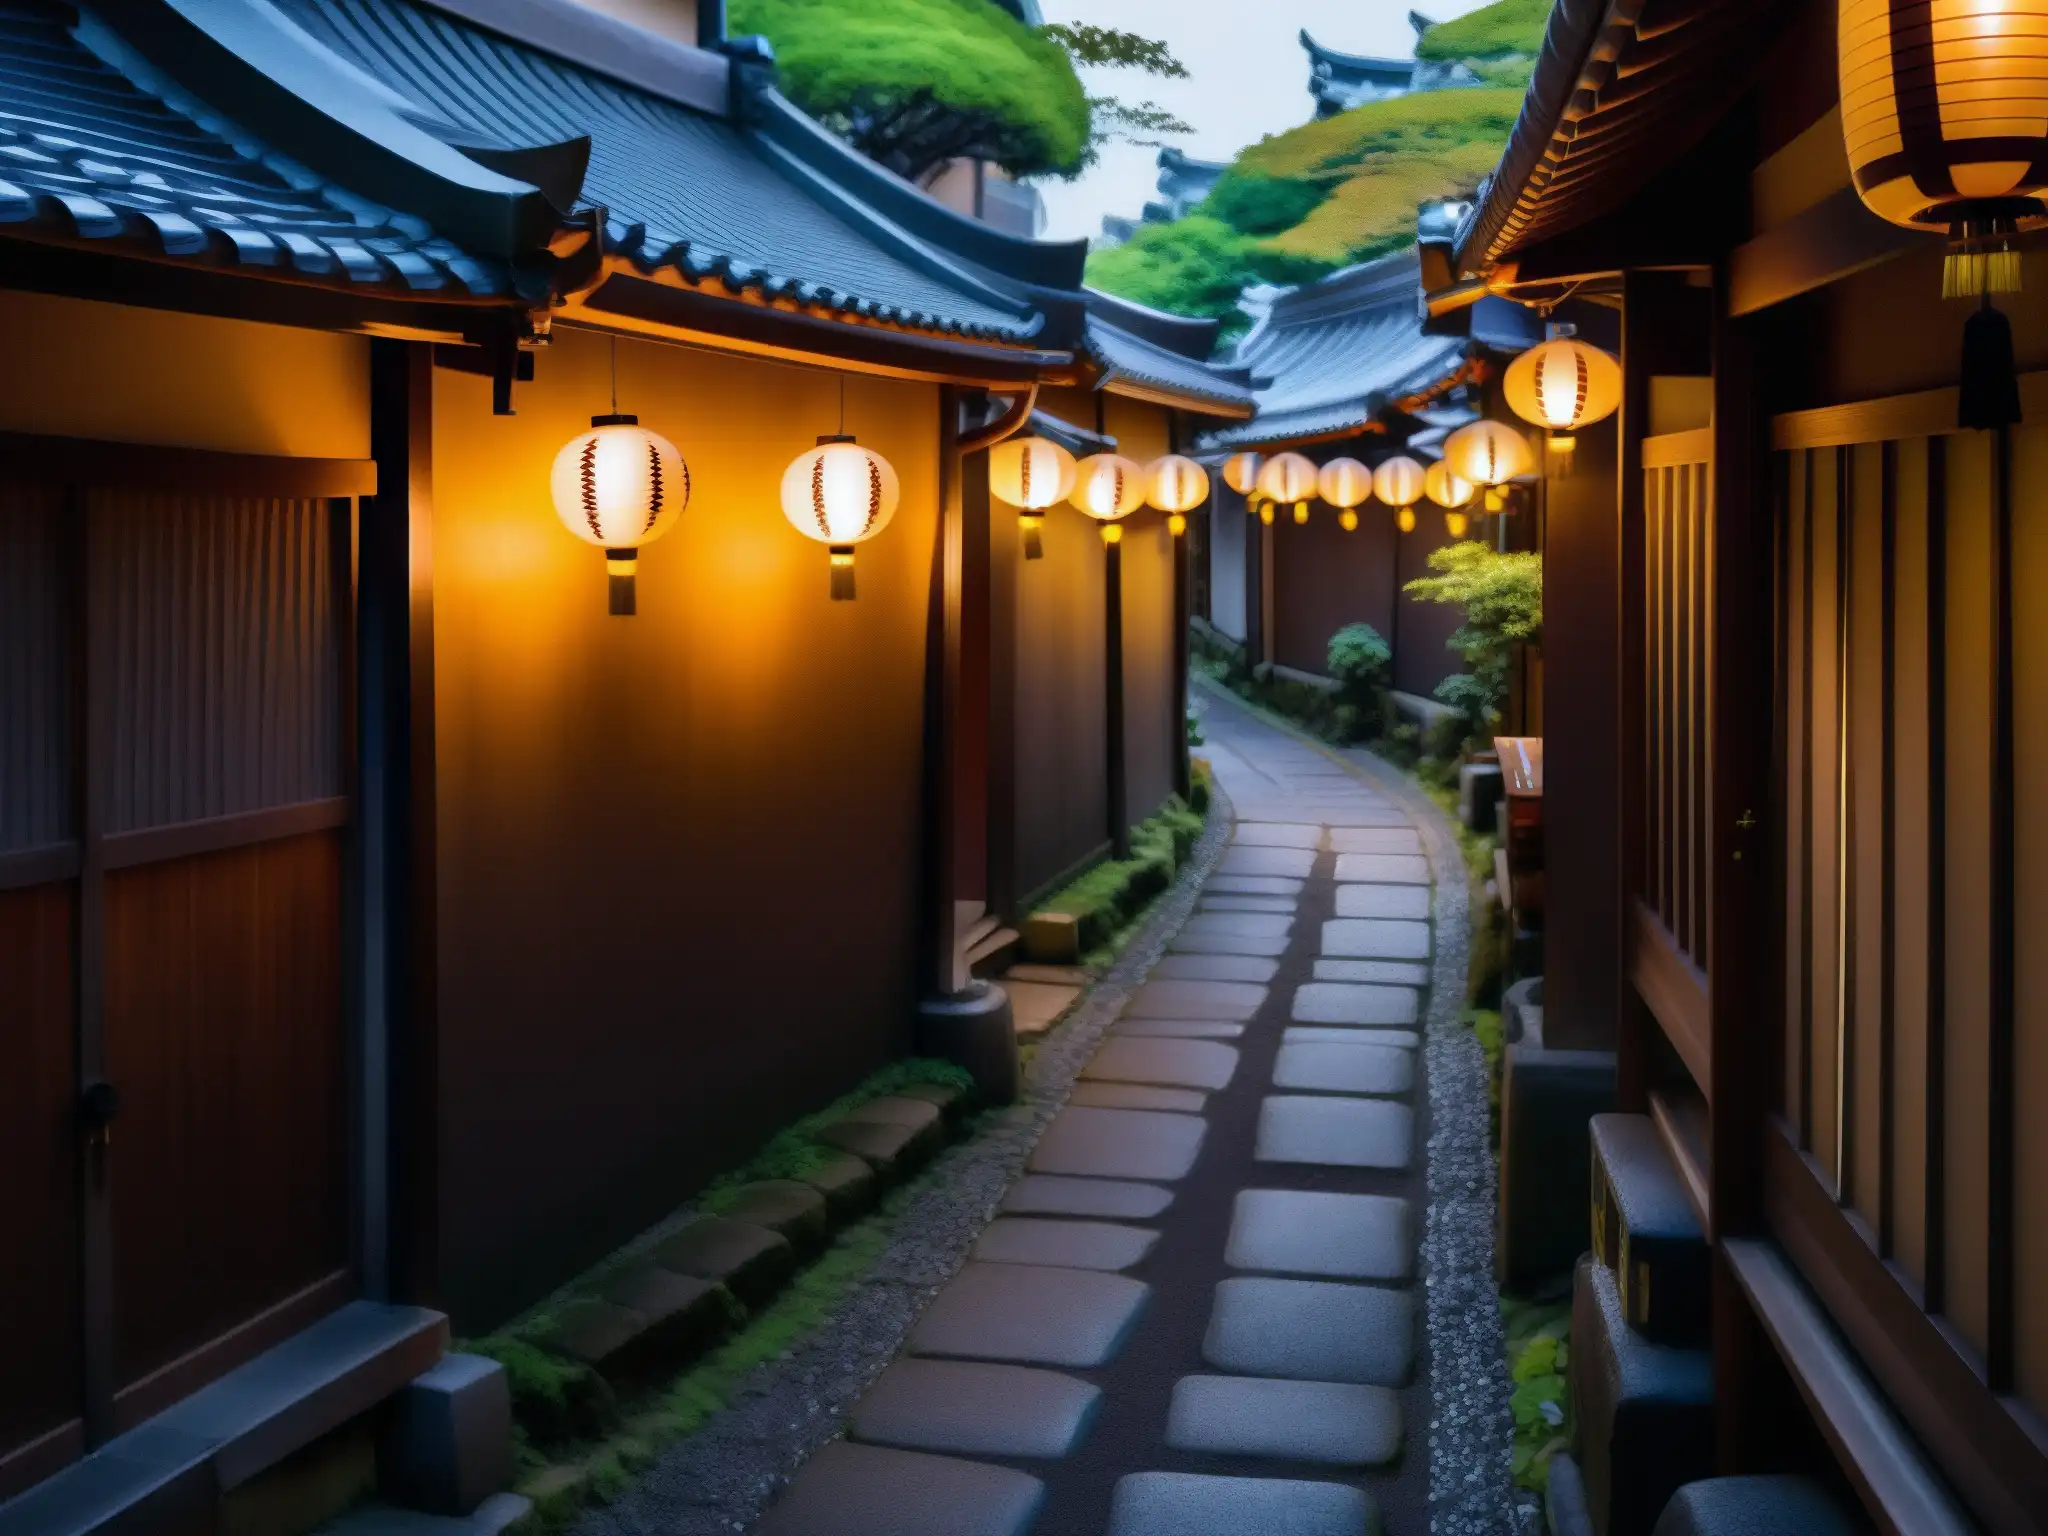 Alley misterioso en Tokyo con farol japonés iluminando el camino de adoquines